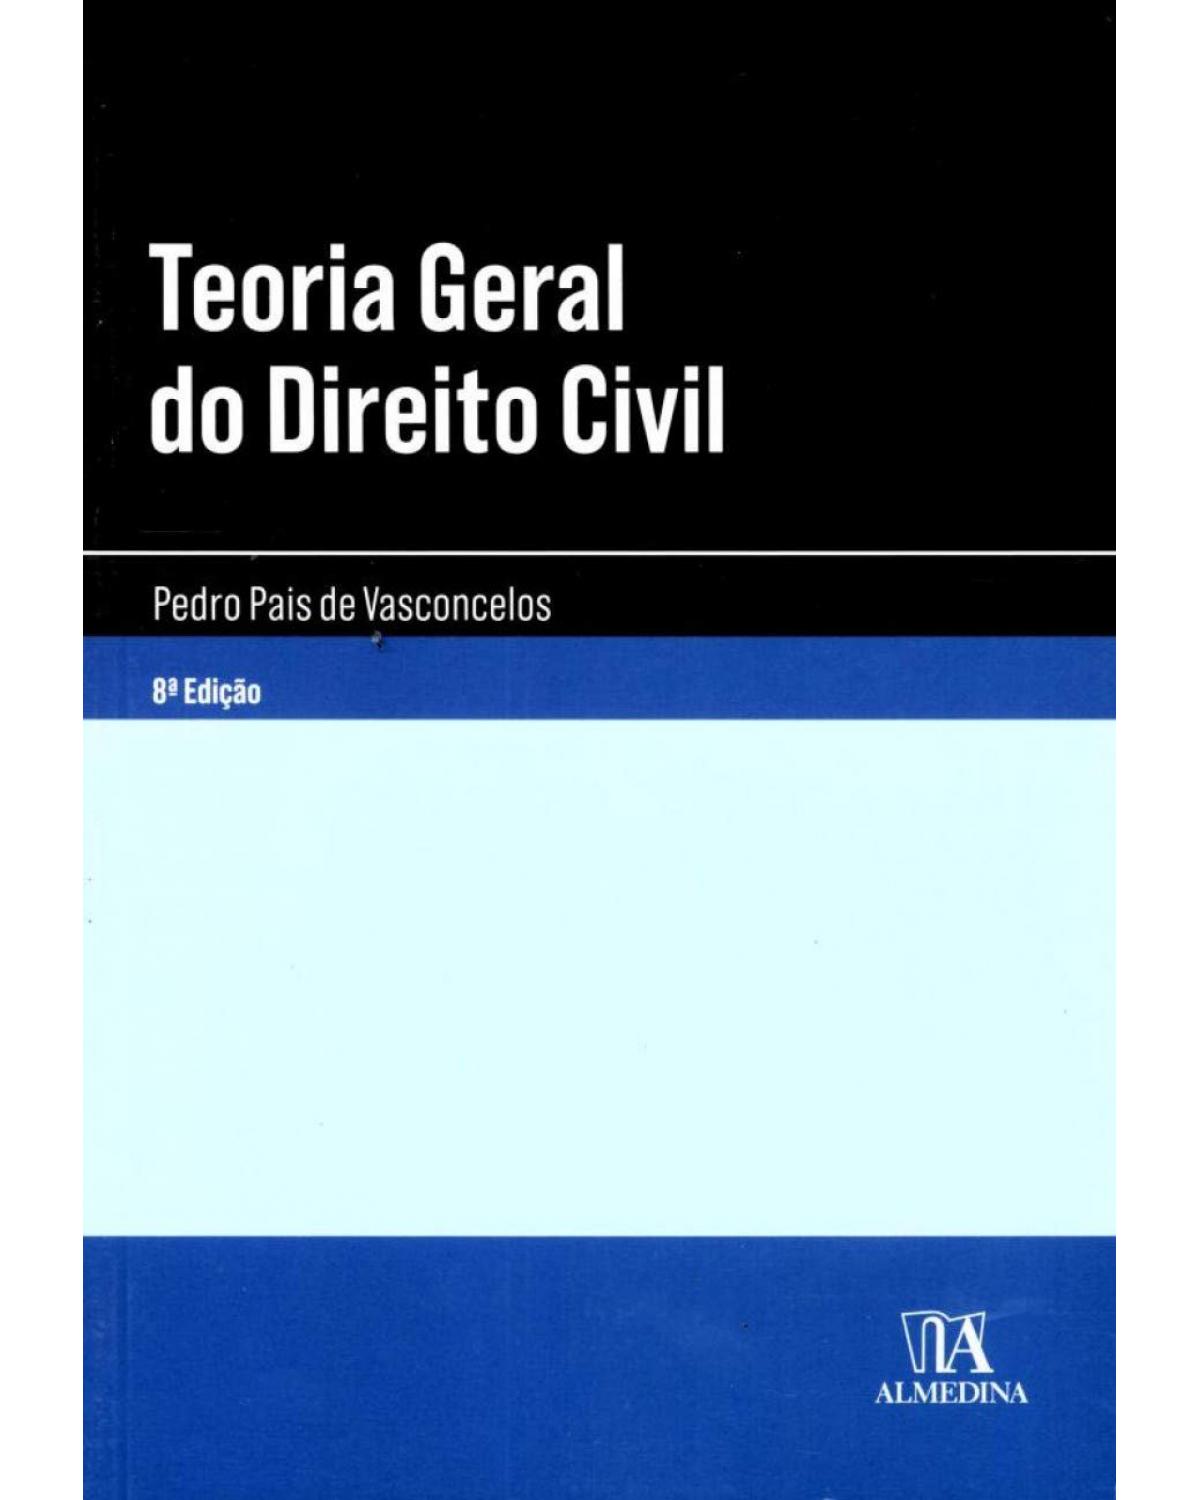 Teoria geral do direito civil - 8ª Edição | 2012